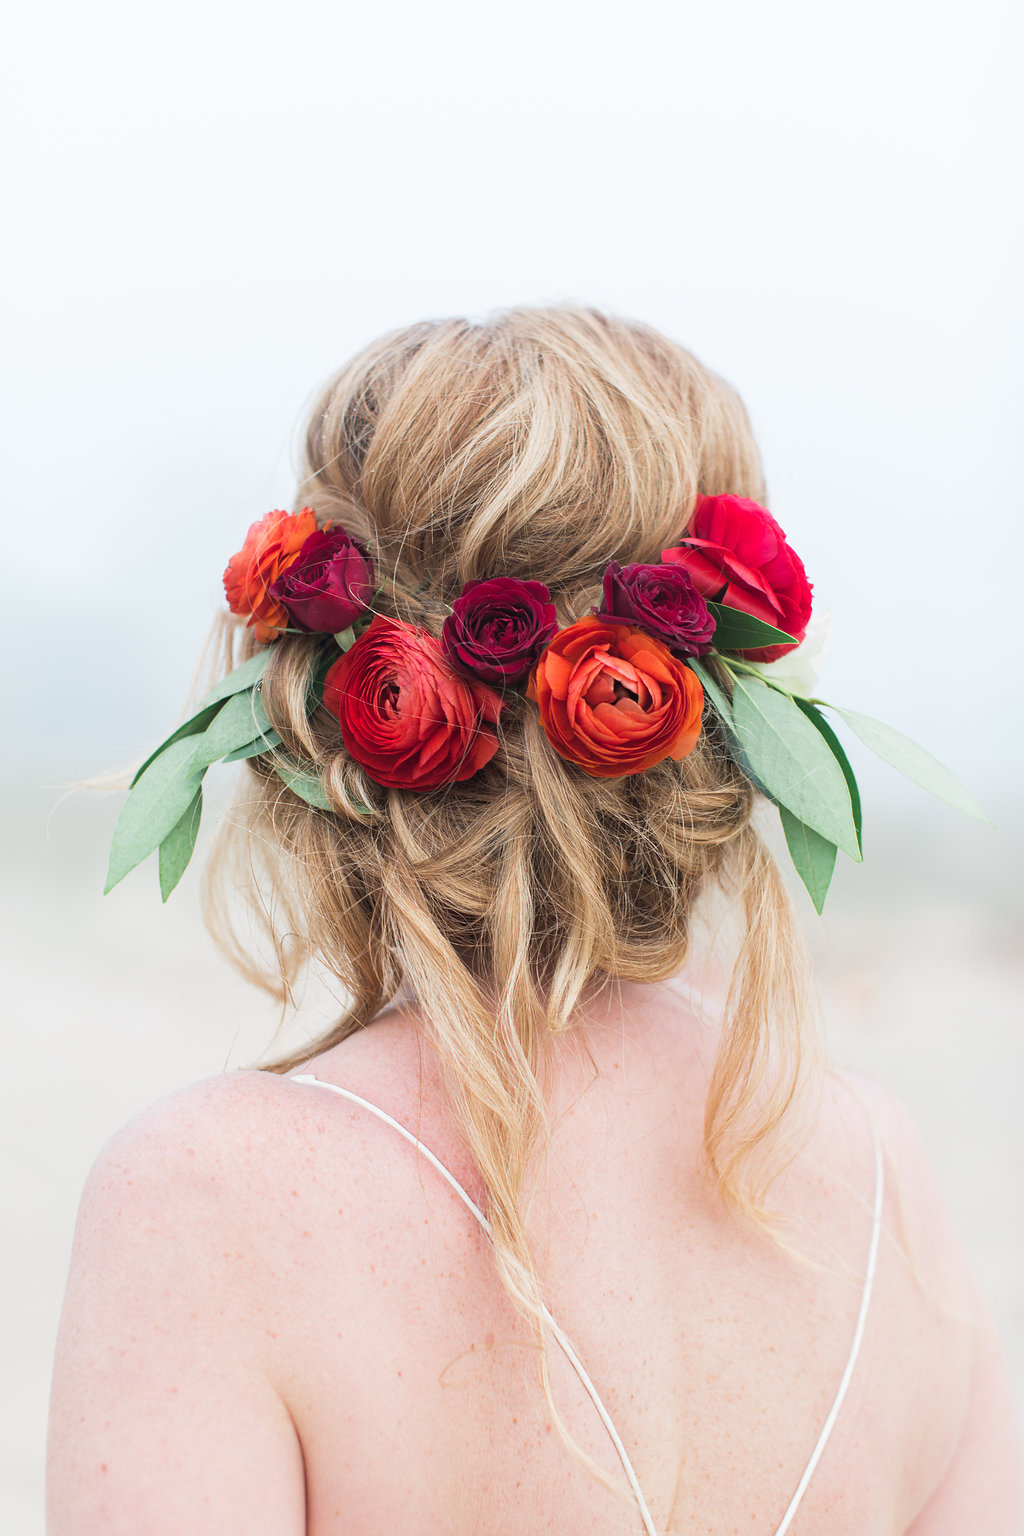 Flower wedding hair